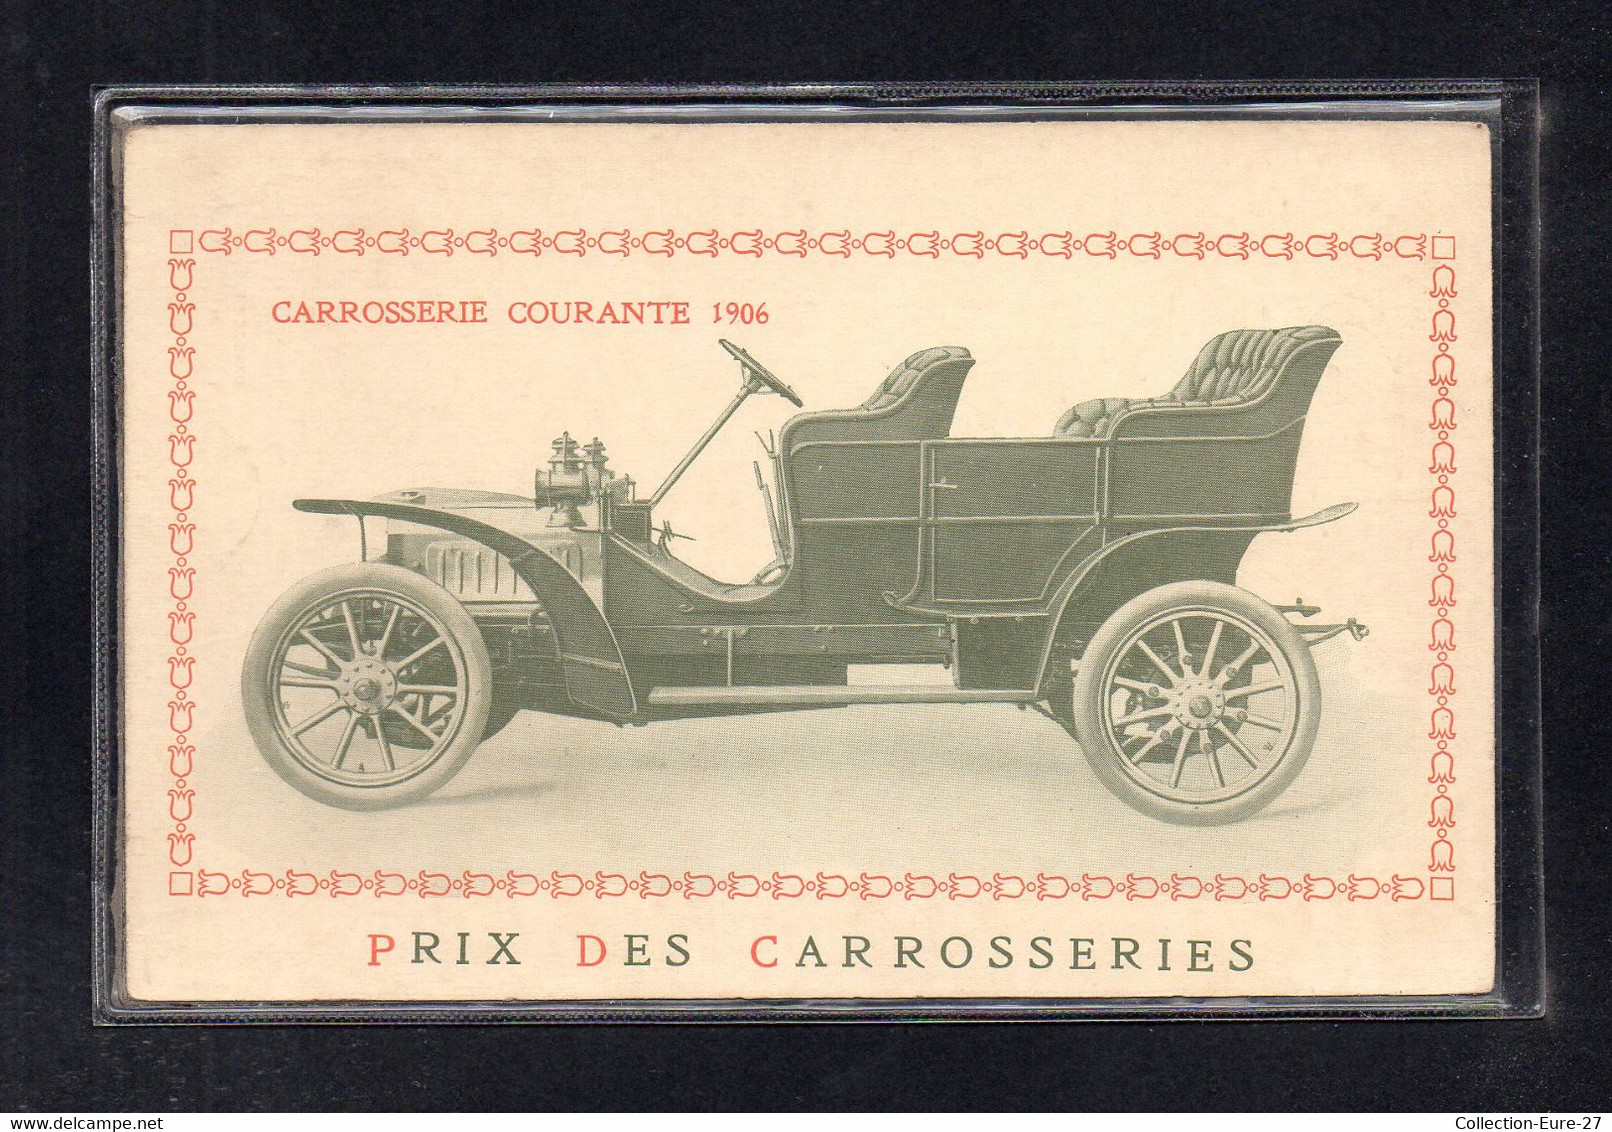 (18/09/21) THEME AUTOMOBILE-CPA CARROSSERIE COURANTE 1906 - PRIX DES CARROSSERIES - PKW